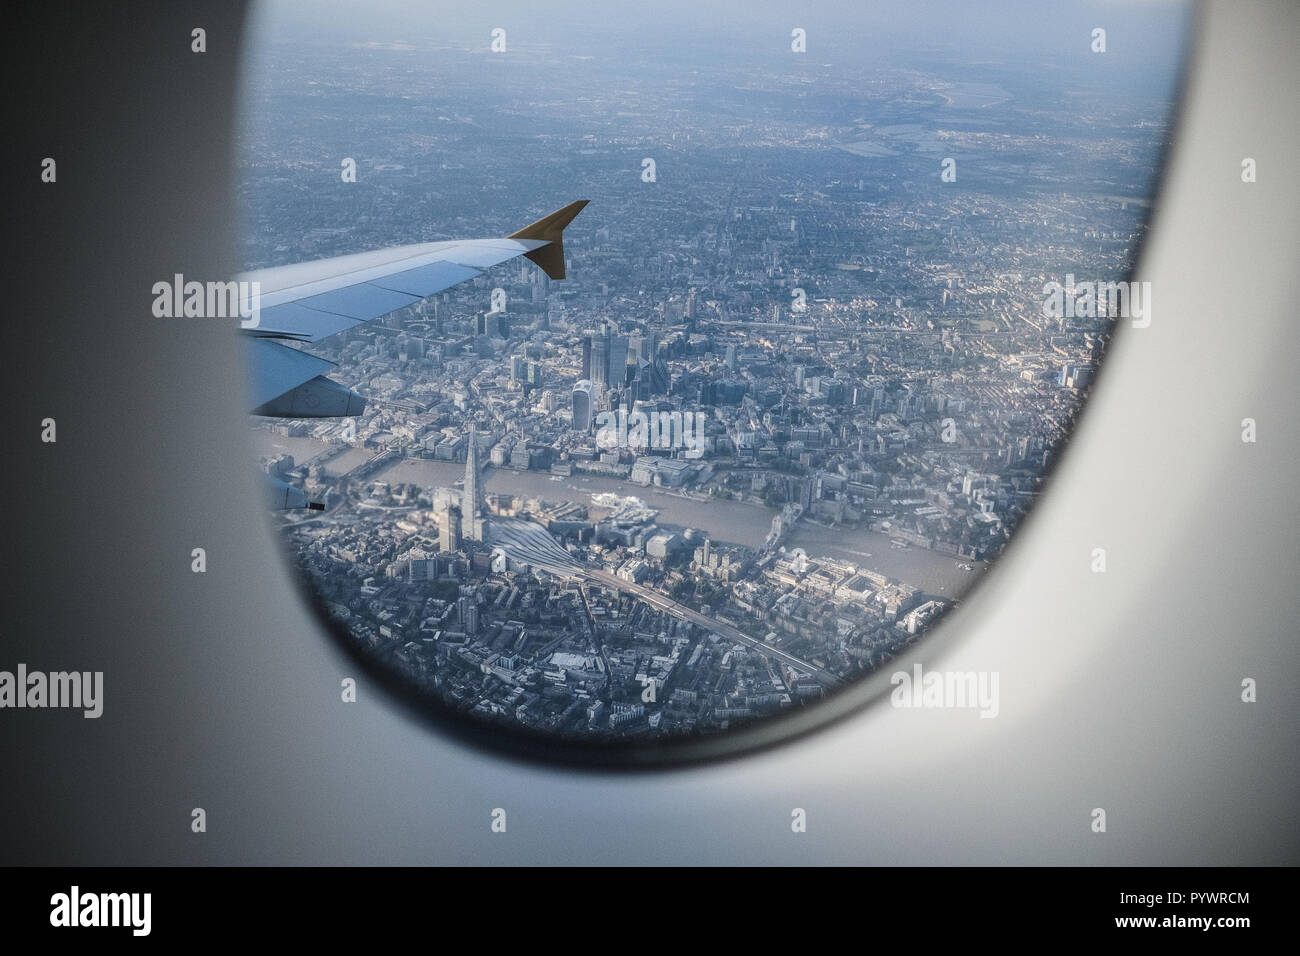 Luftaufnahme von London einschließlich der Shard aus einem Flugzeug Fenster, England, Großbritannien Stockfoto